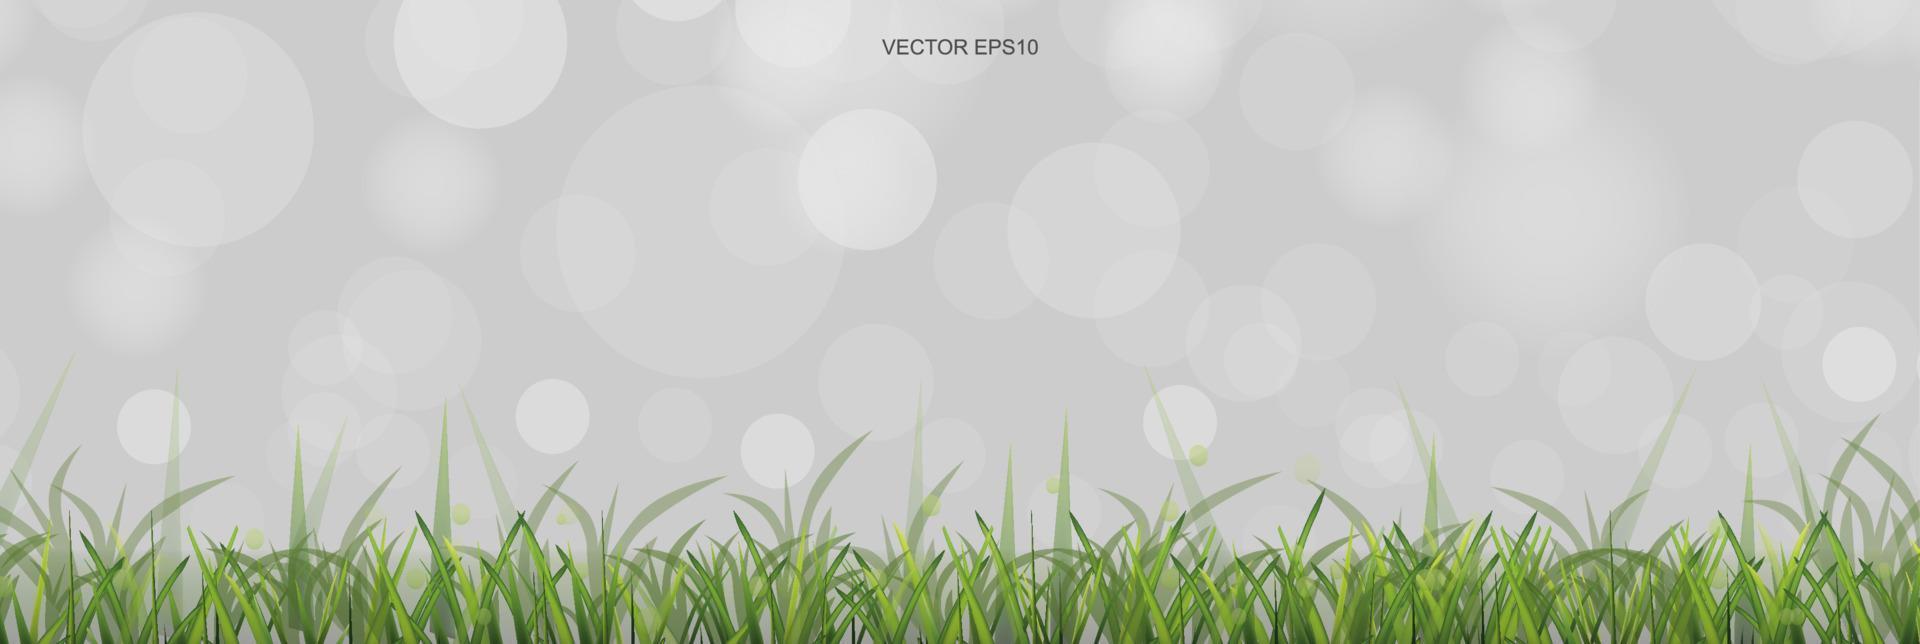 grönt gräsfält med ljus suddig bokeh bakgrund. vektor. vektor